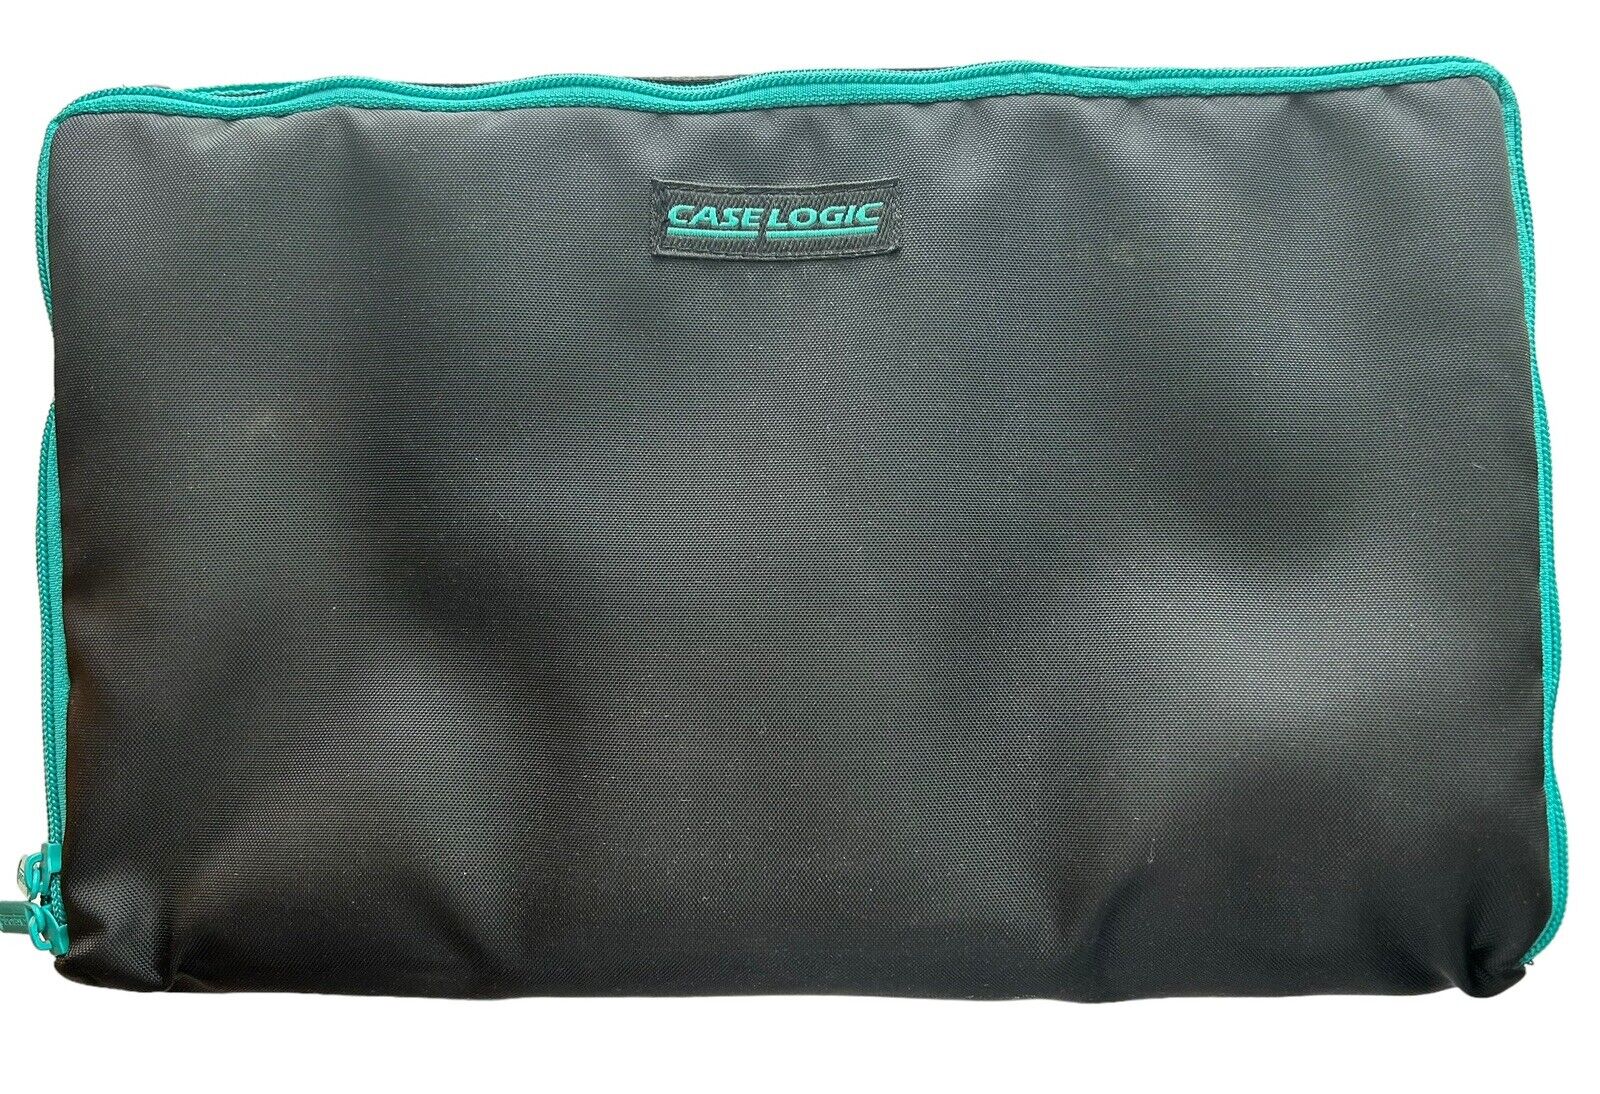 Vintage Case Logic 30 Cassette Tape Carrying Case Bag Holder Black And Aqua